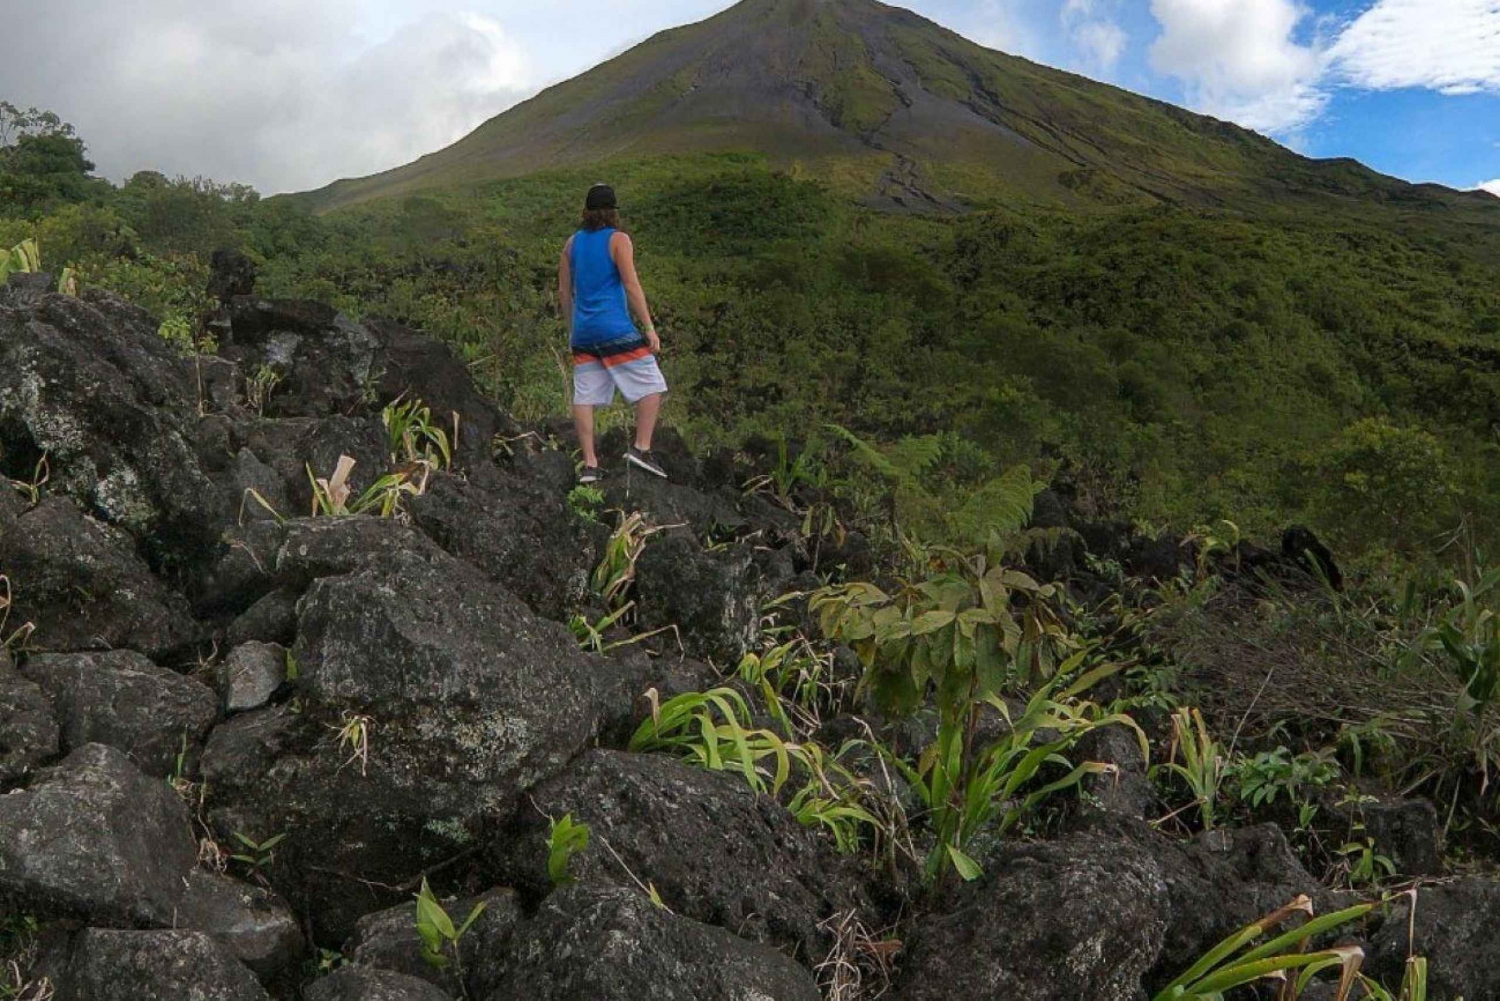 La Fortuna: Escursione crepuscolare al vulcano Arenal con sorgenti termali